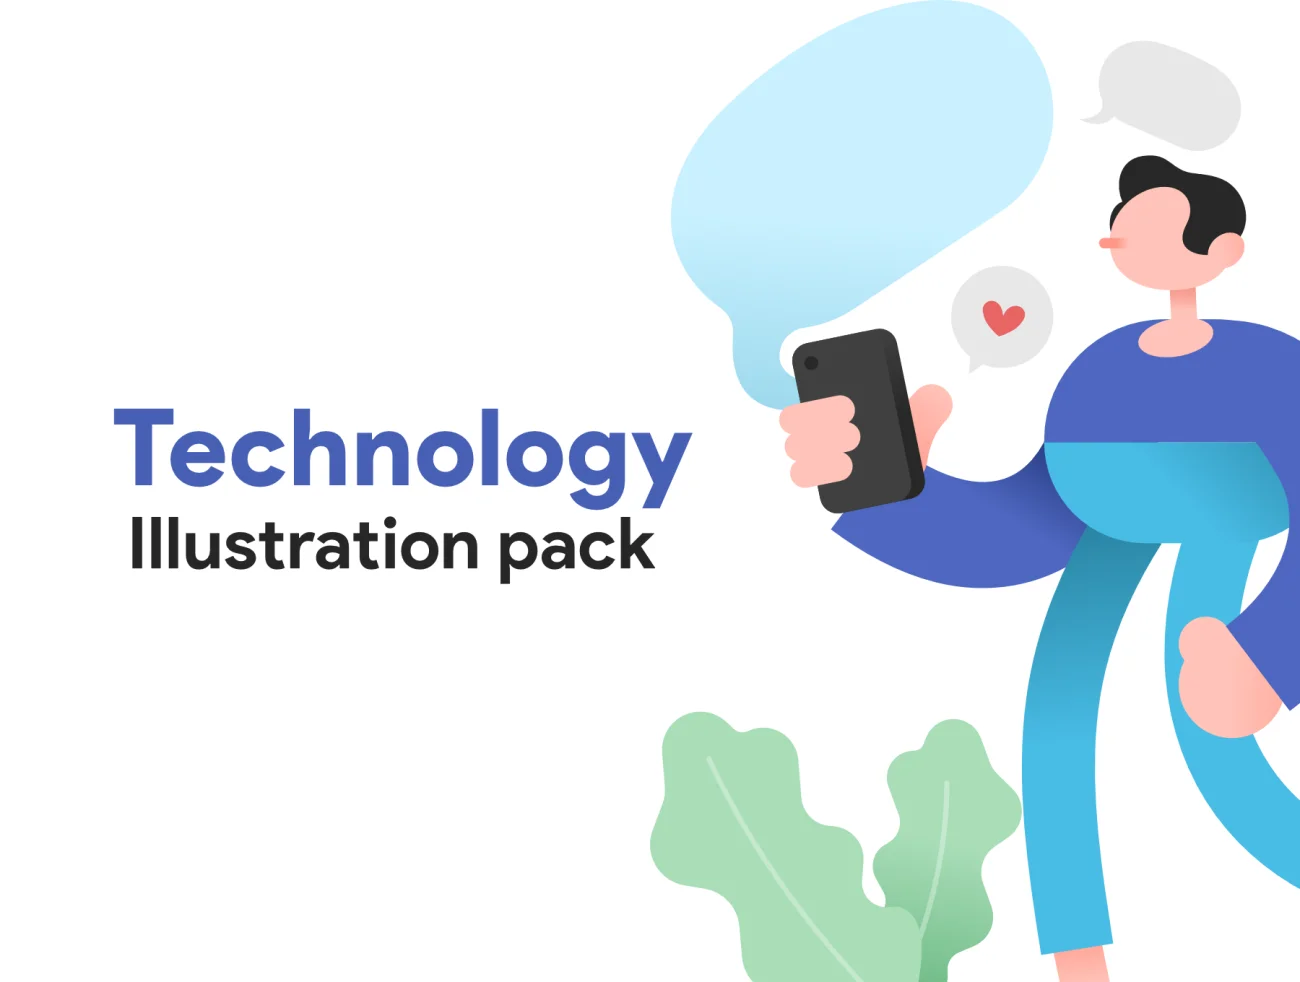 Technology illustration 技术插画-UI/UX、人物插画、商业金融、学习生活、插画、数据演示、概念创意、社交购物、职场办公、金融理财-到位啦UI